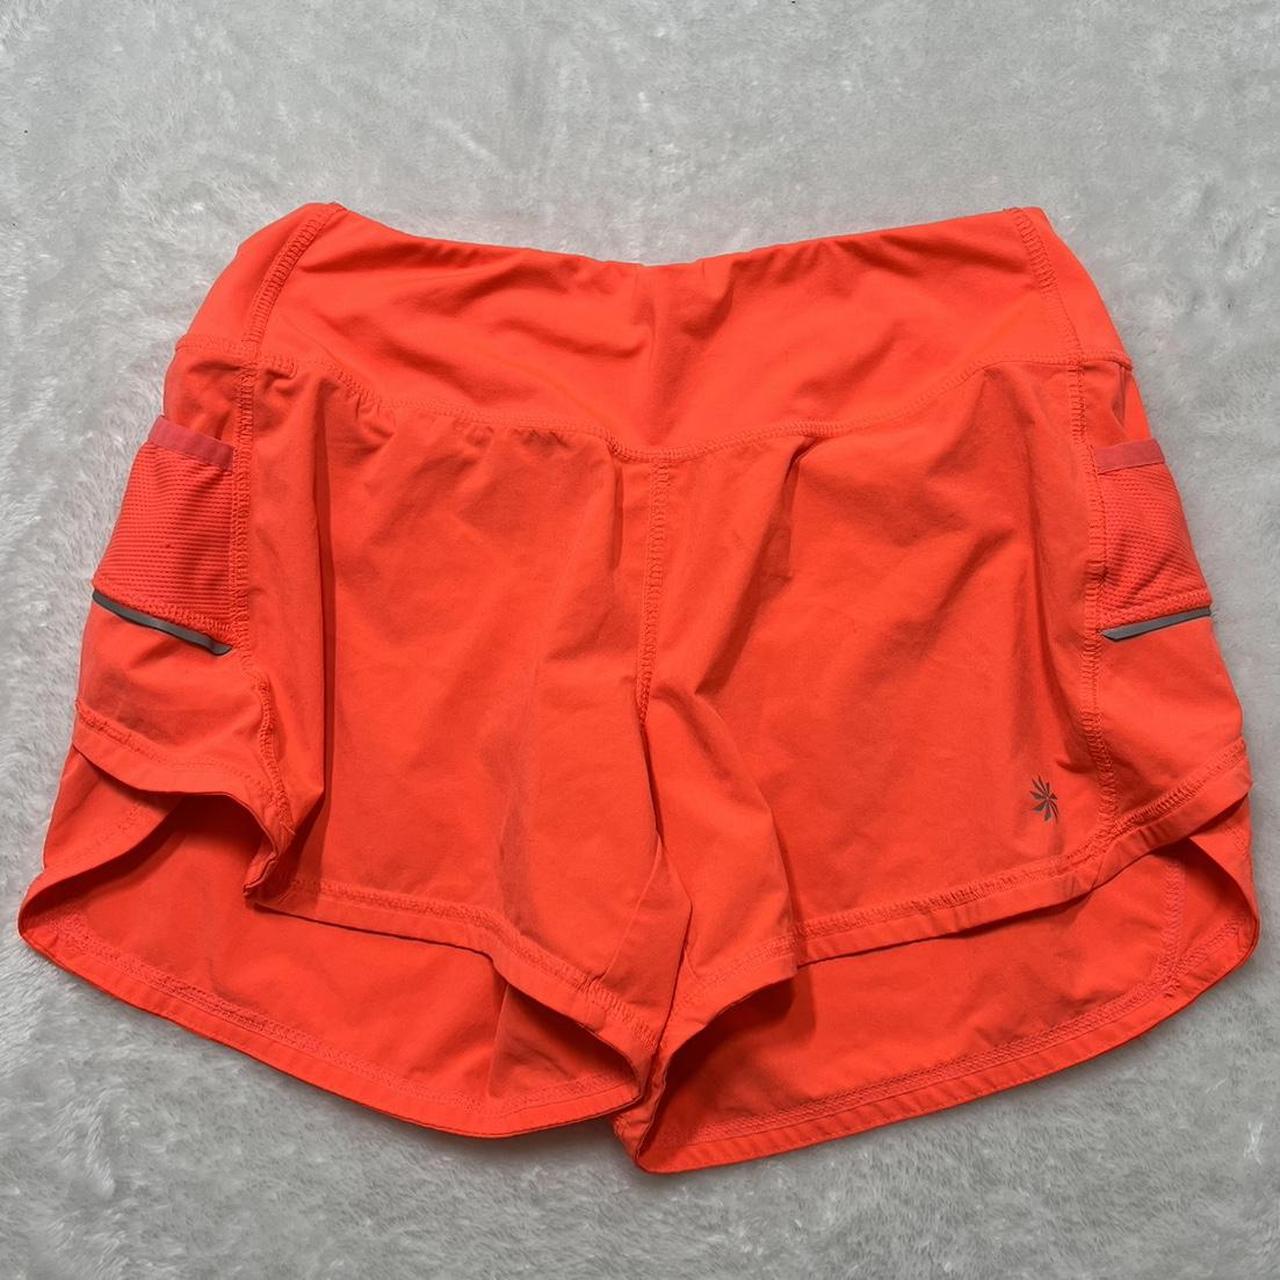 Athleta orange shorts size xs women's athletic shorts - Depop